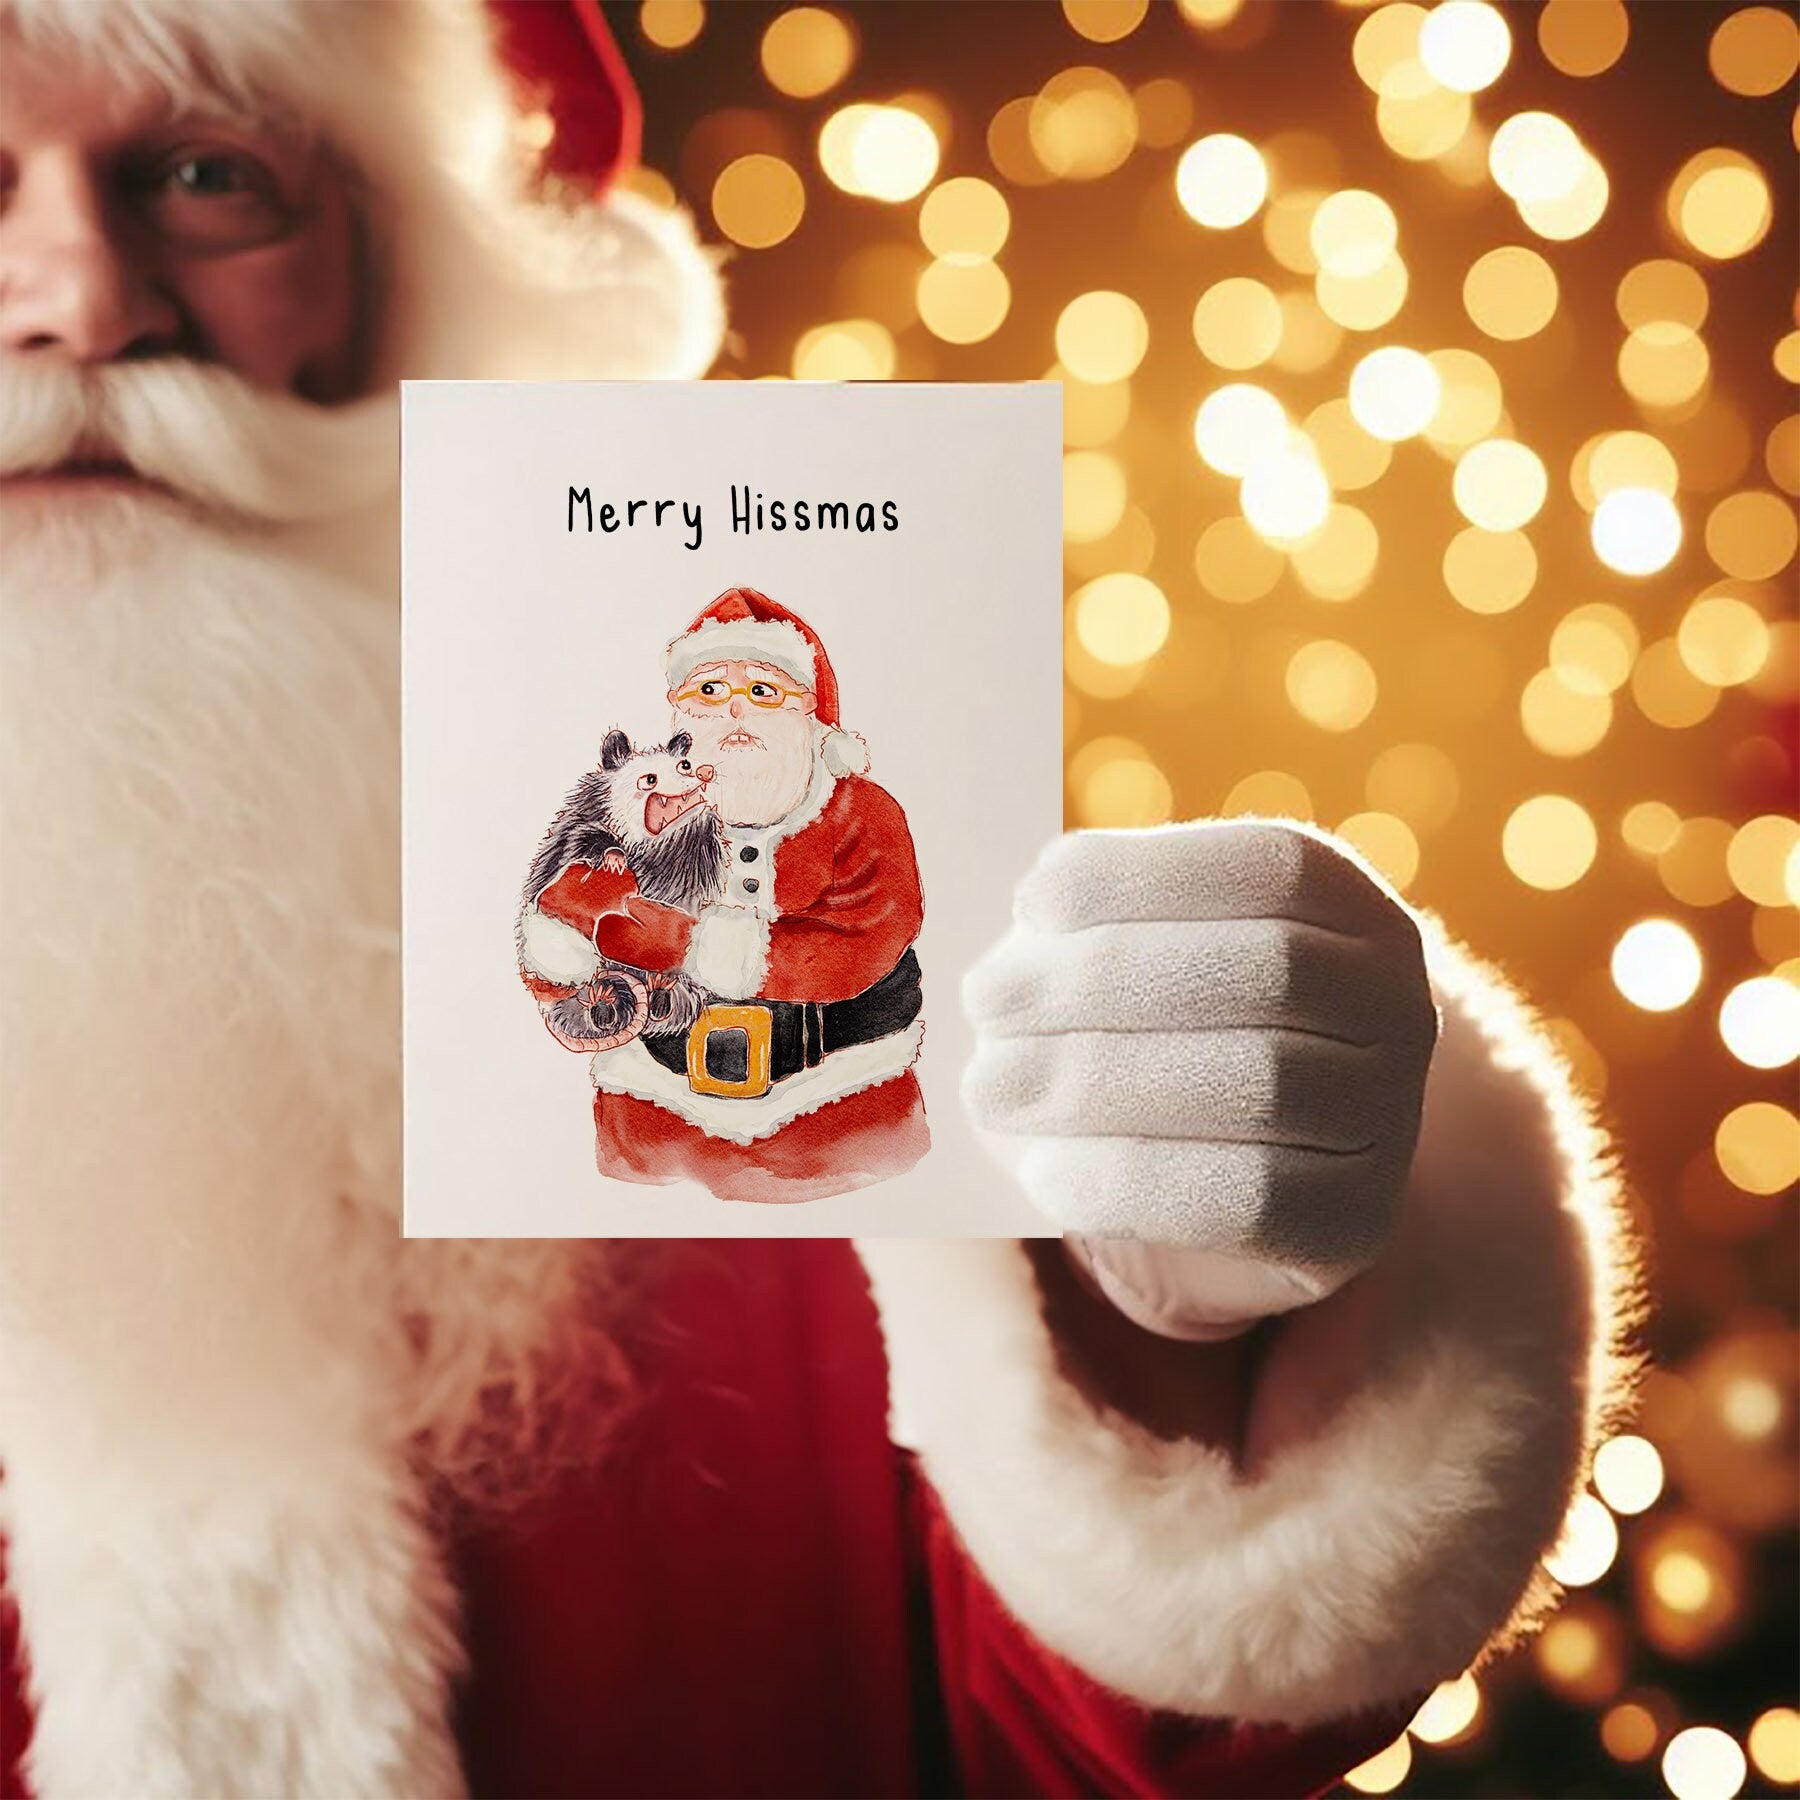 Possum Meets Santa Funny Christmas Card Set - Funny Holiday Gifts